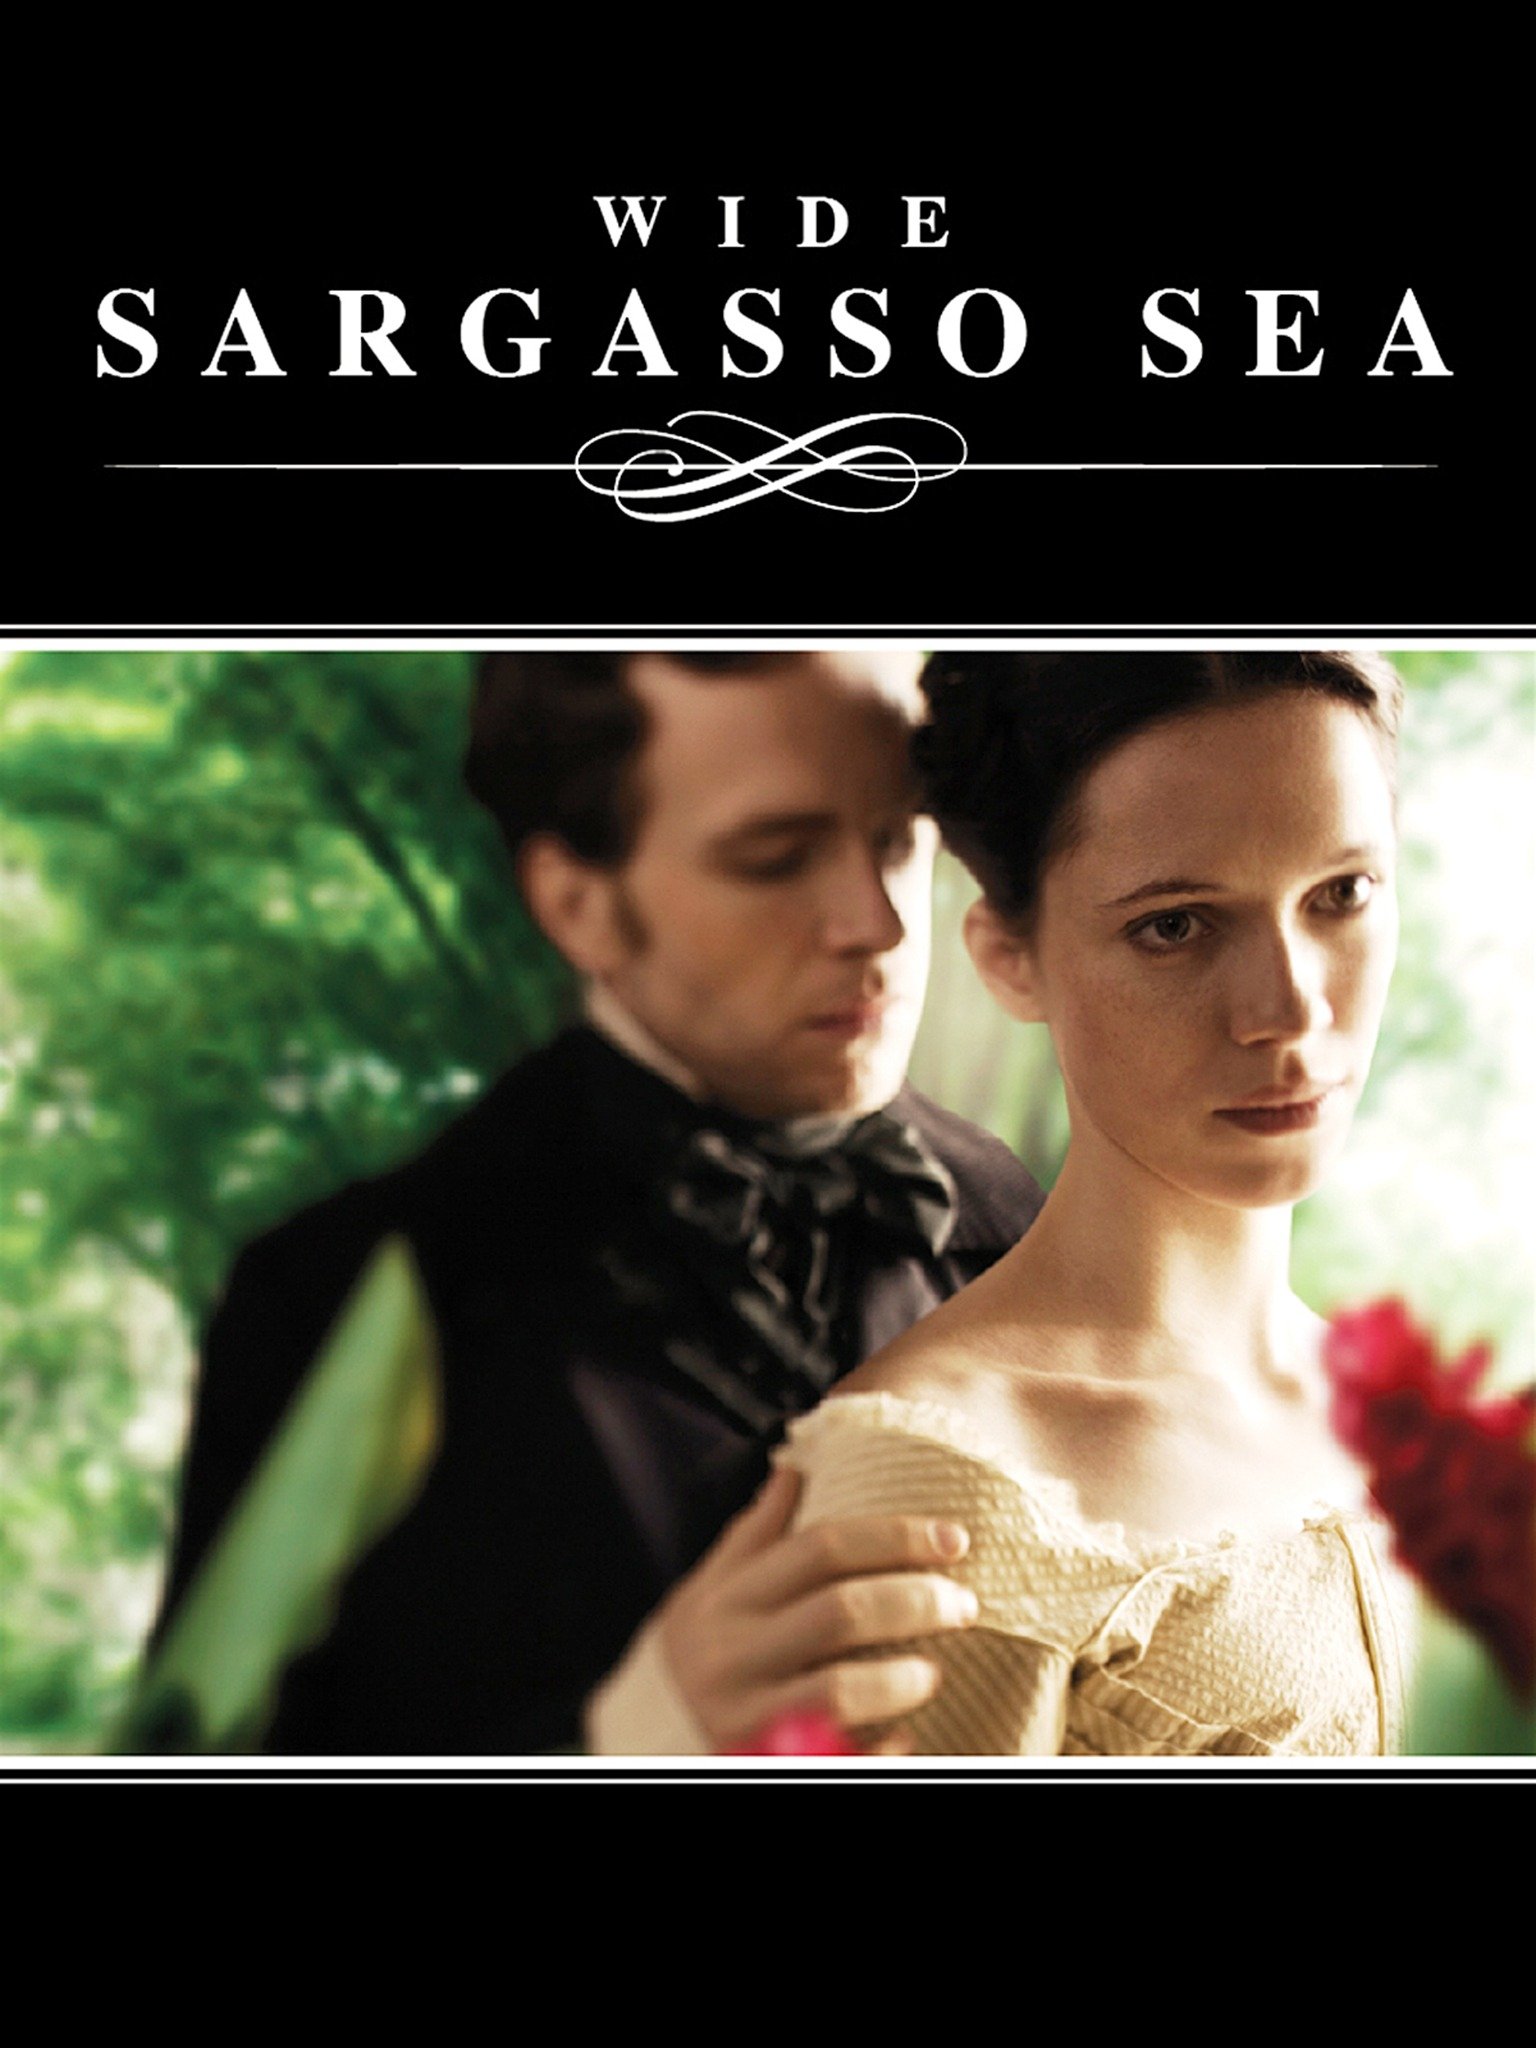 Wide sargasso sea audiobook download